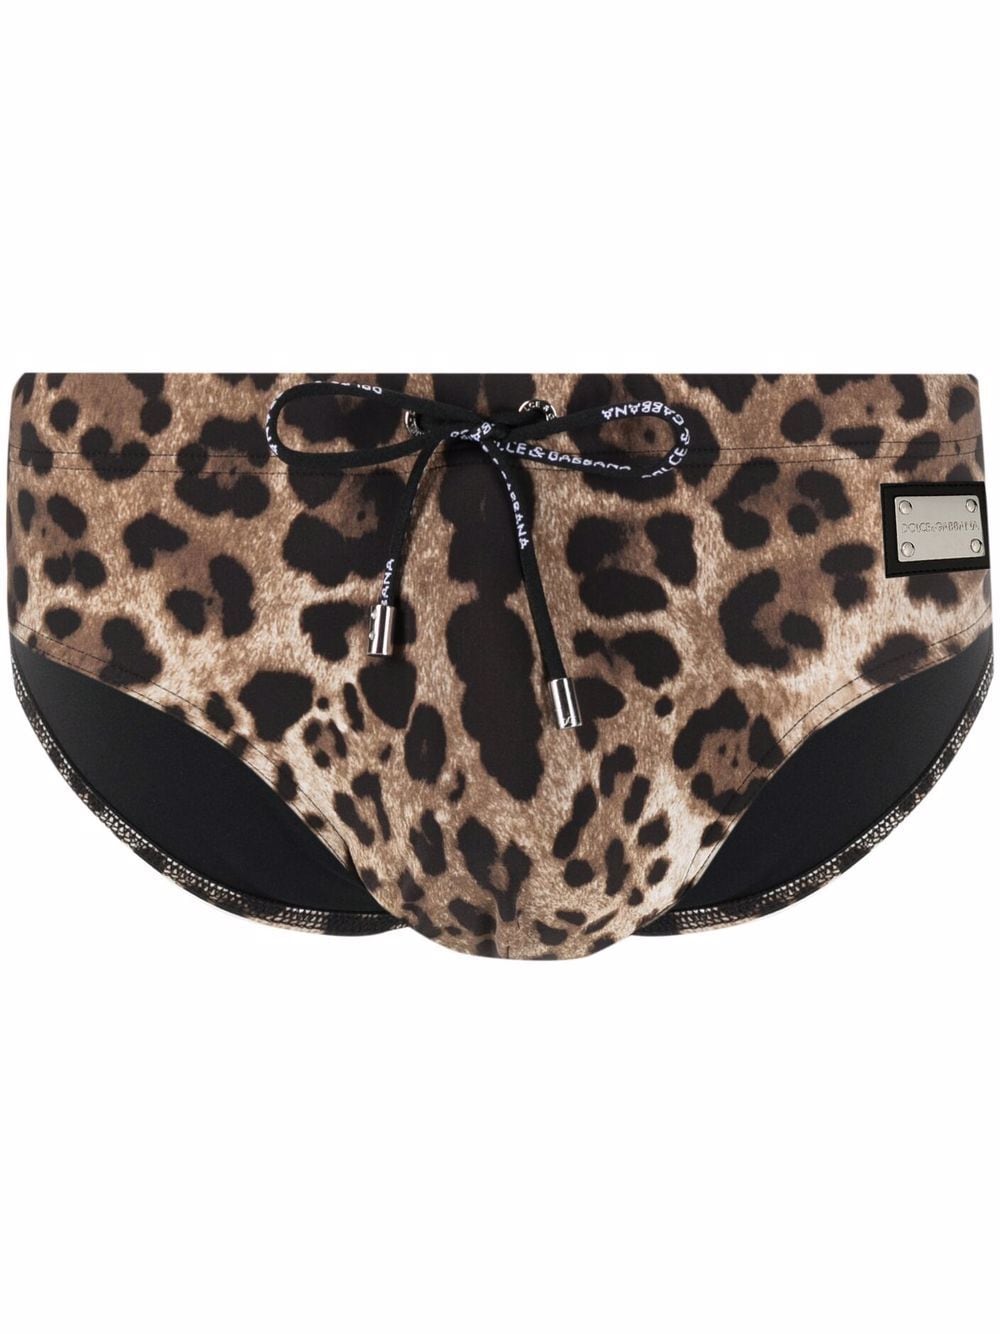 Dolce & Gabbana leopard-print swim briefs - Brown von Dolce & Gabbana